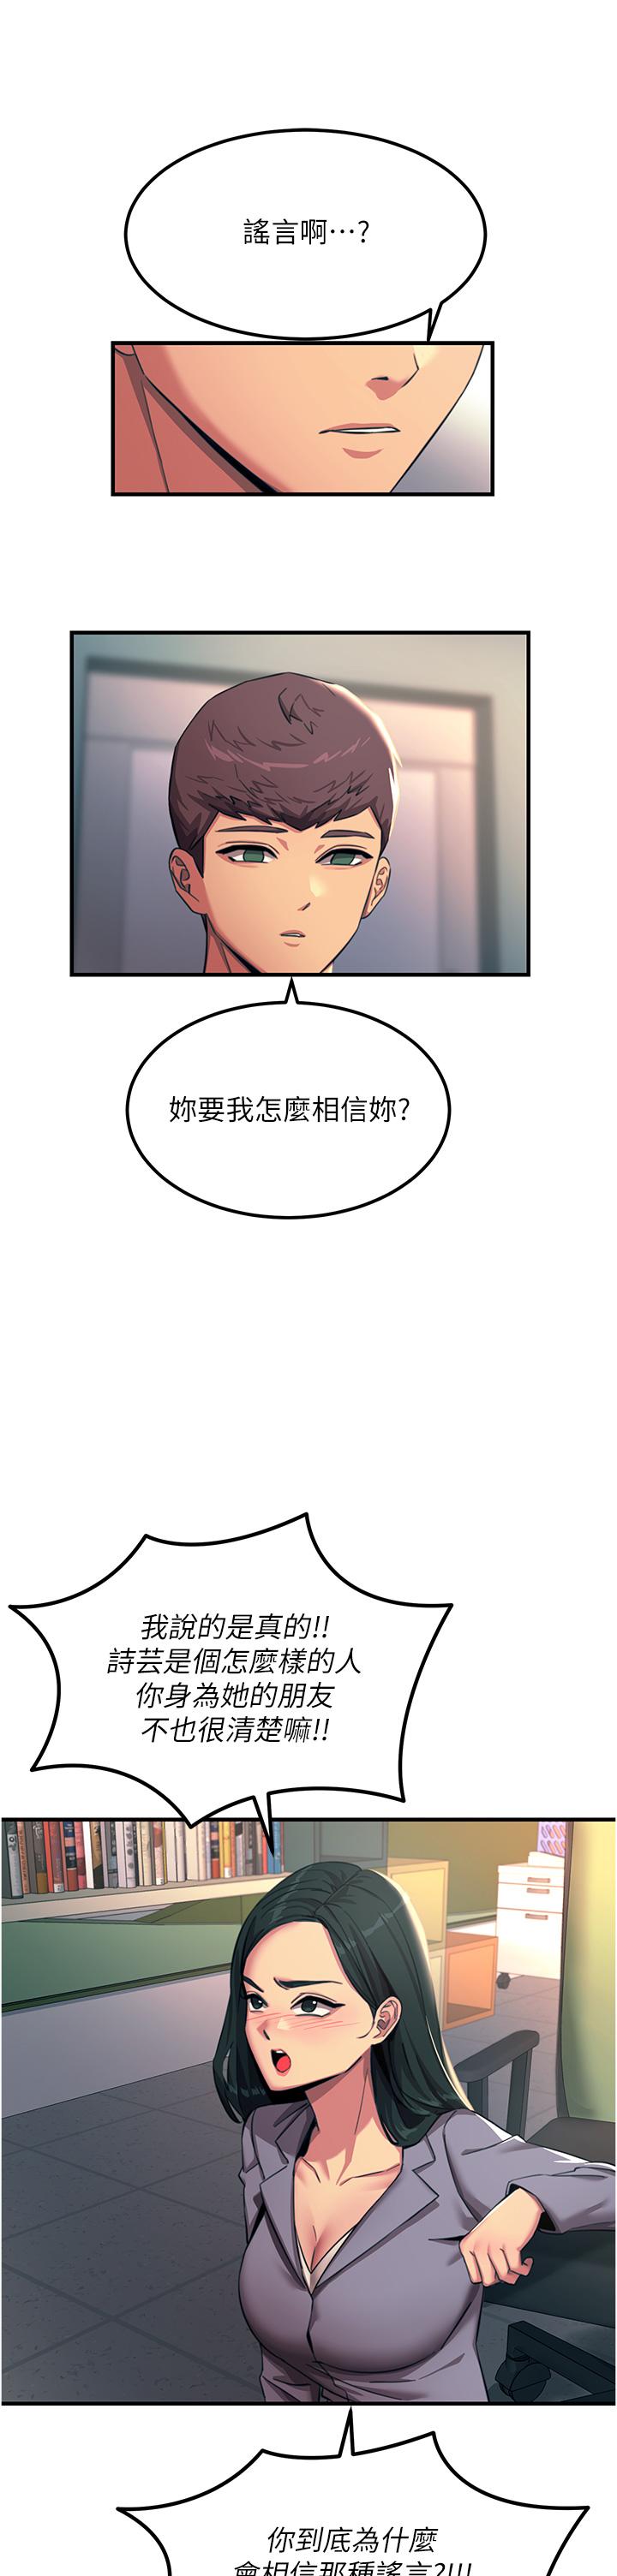 韩国污漫画 觸電大師 第53话-挑战巨棒极限的经纪人 25